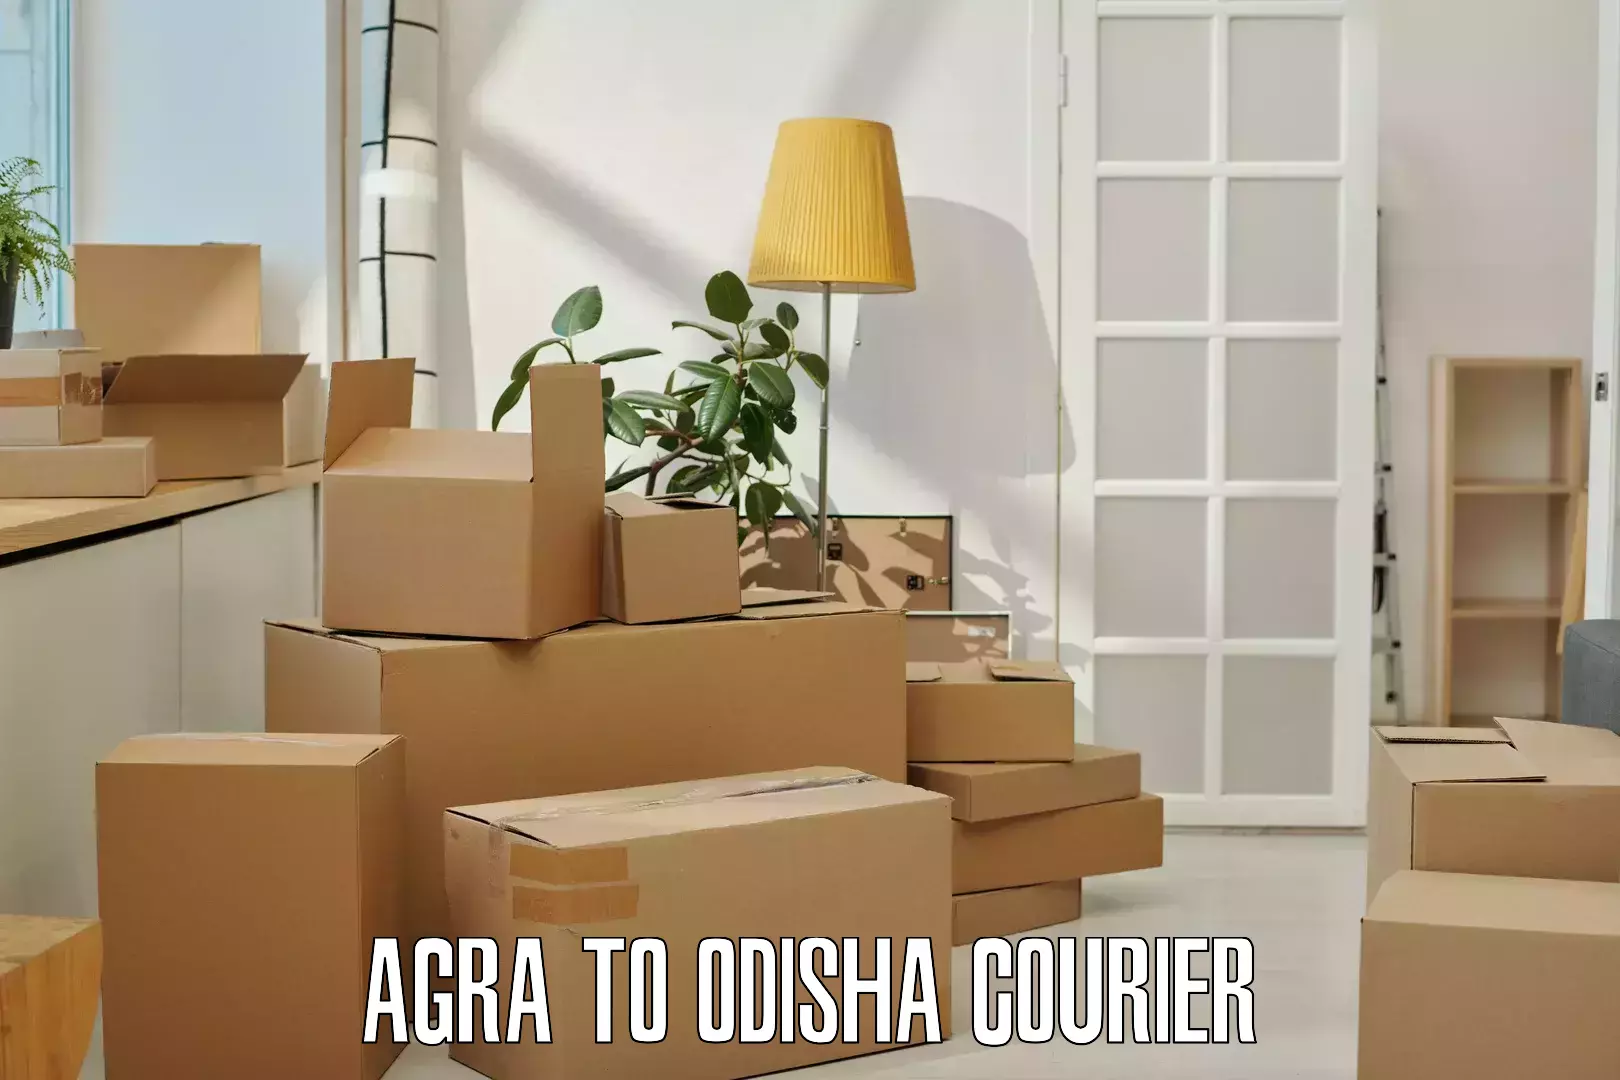 Express logistics service Agra to Sohela